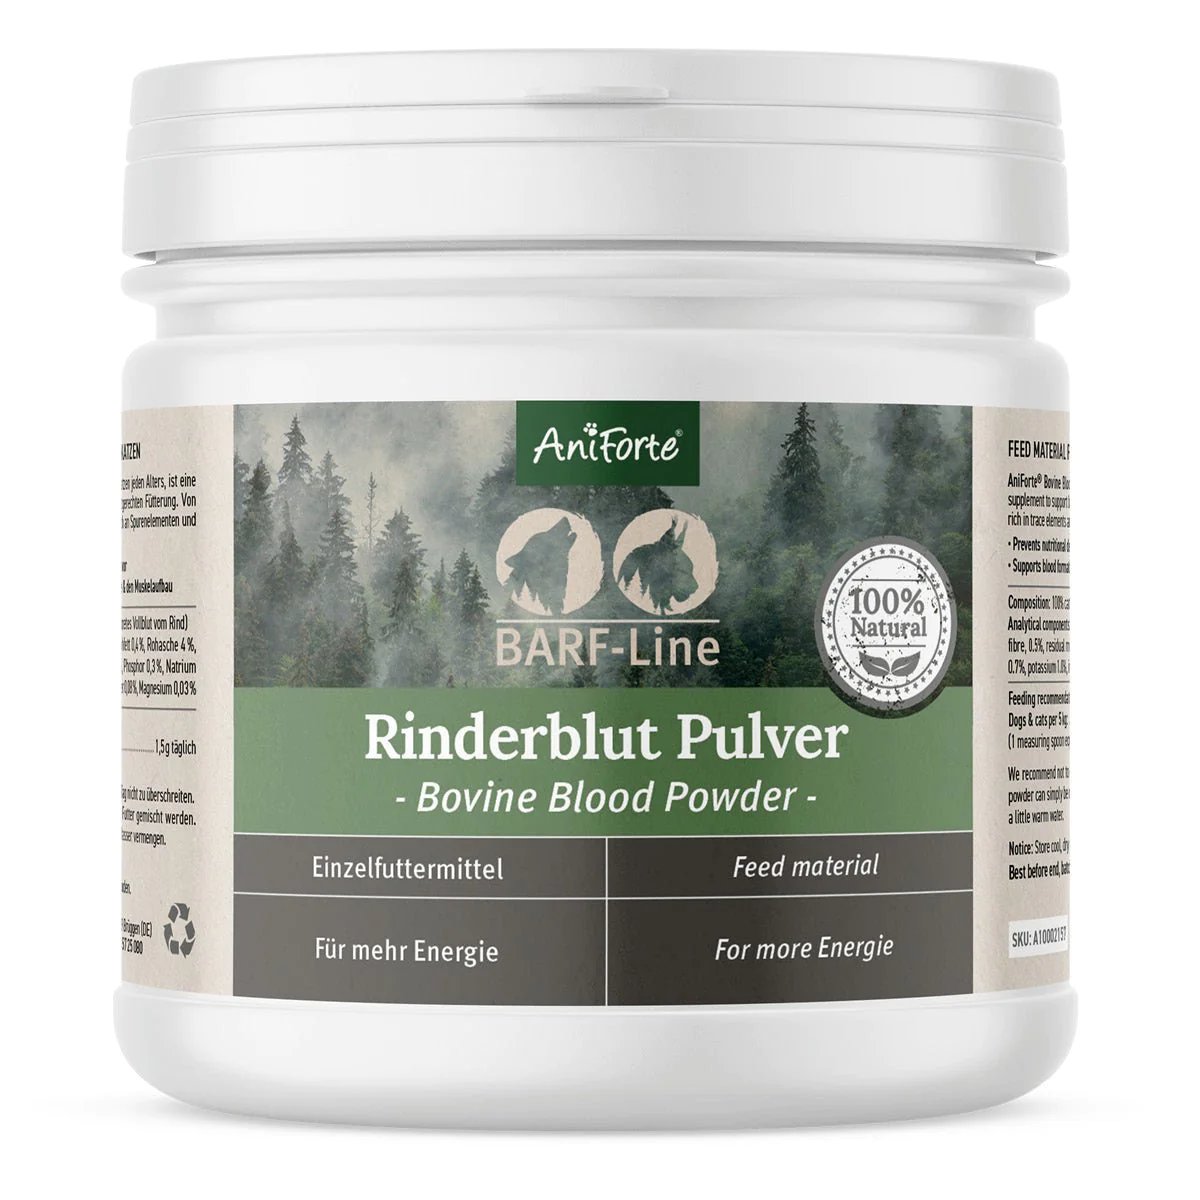 AniForte® Rinderblut-Pulver